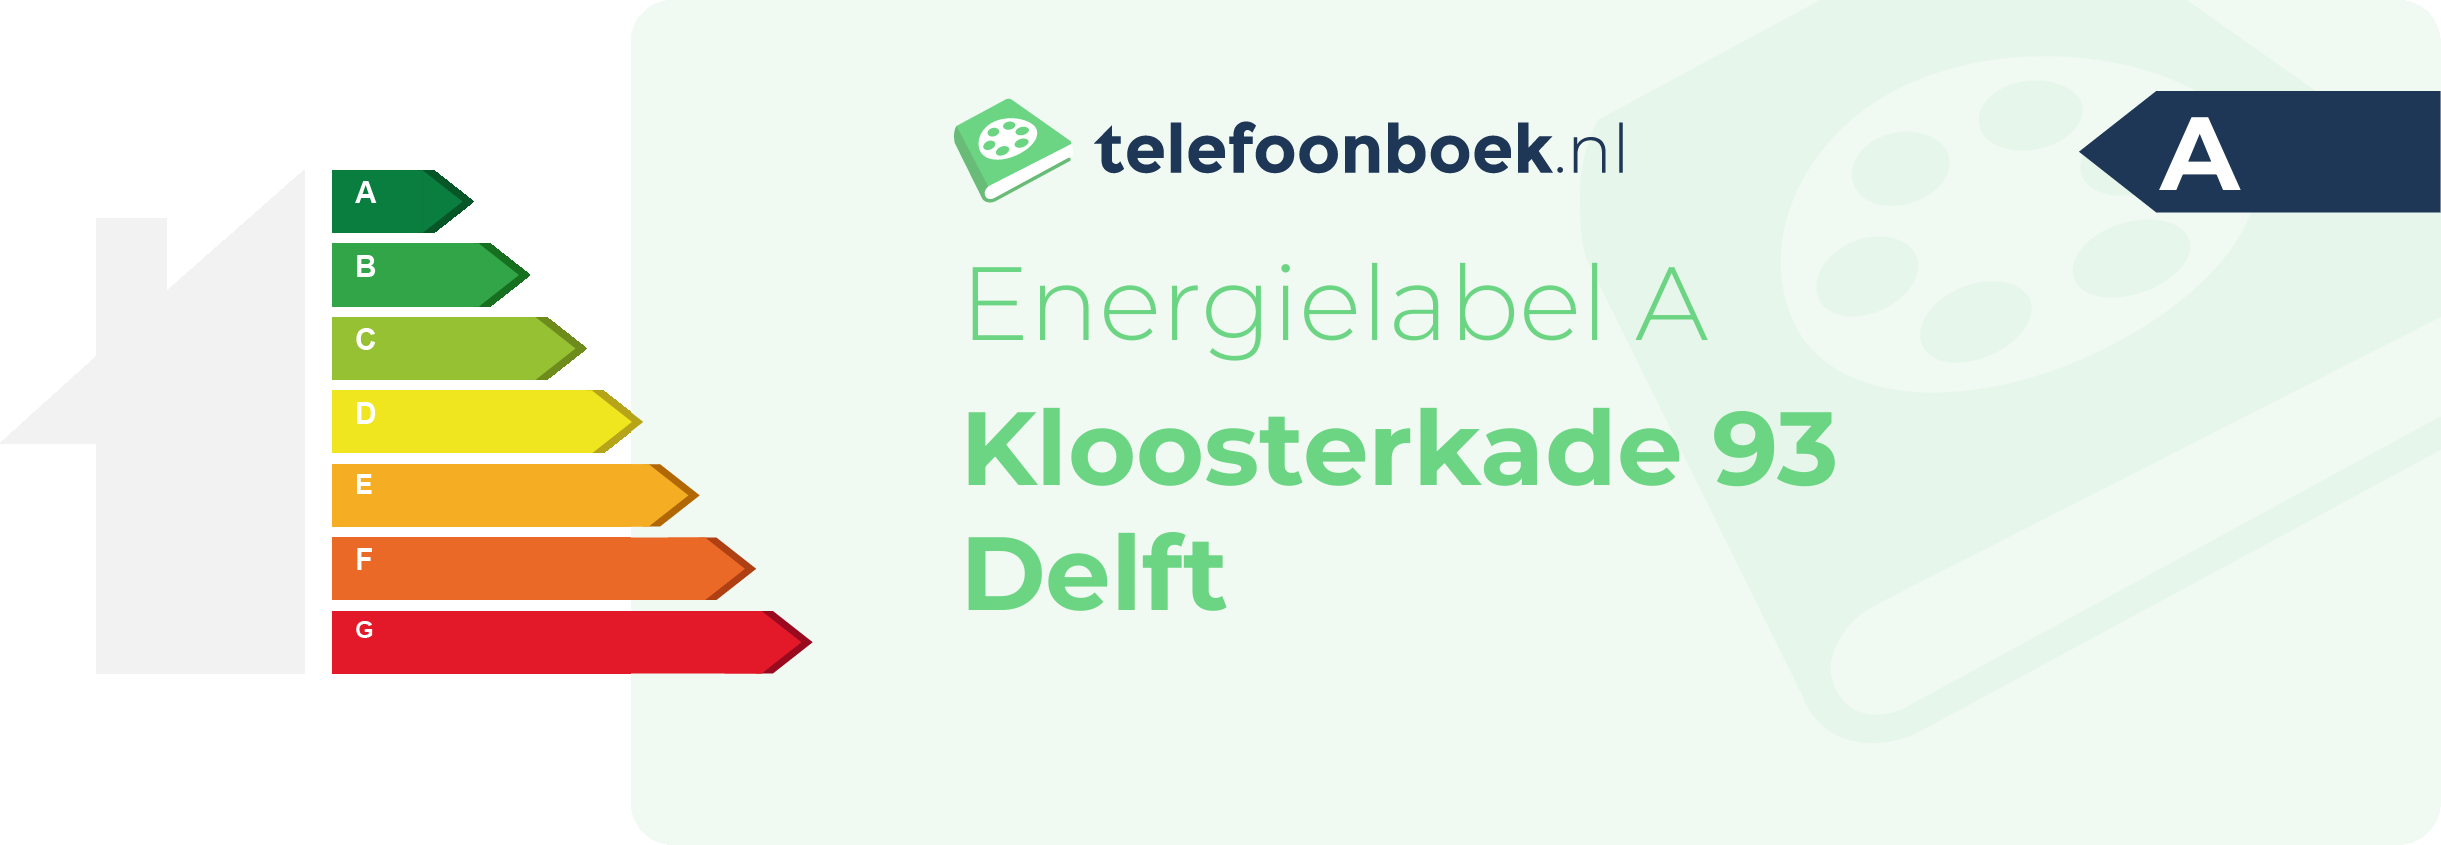 Energielabel Kloosterkade 93 Delft